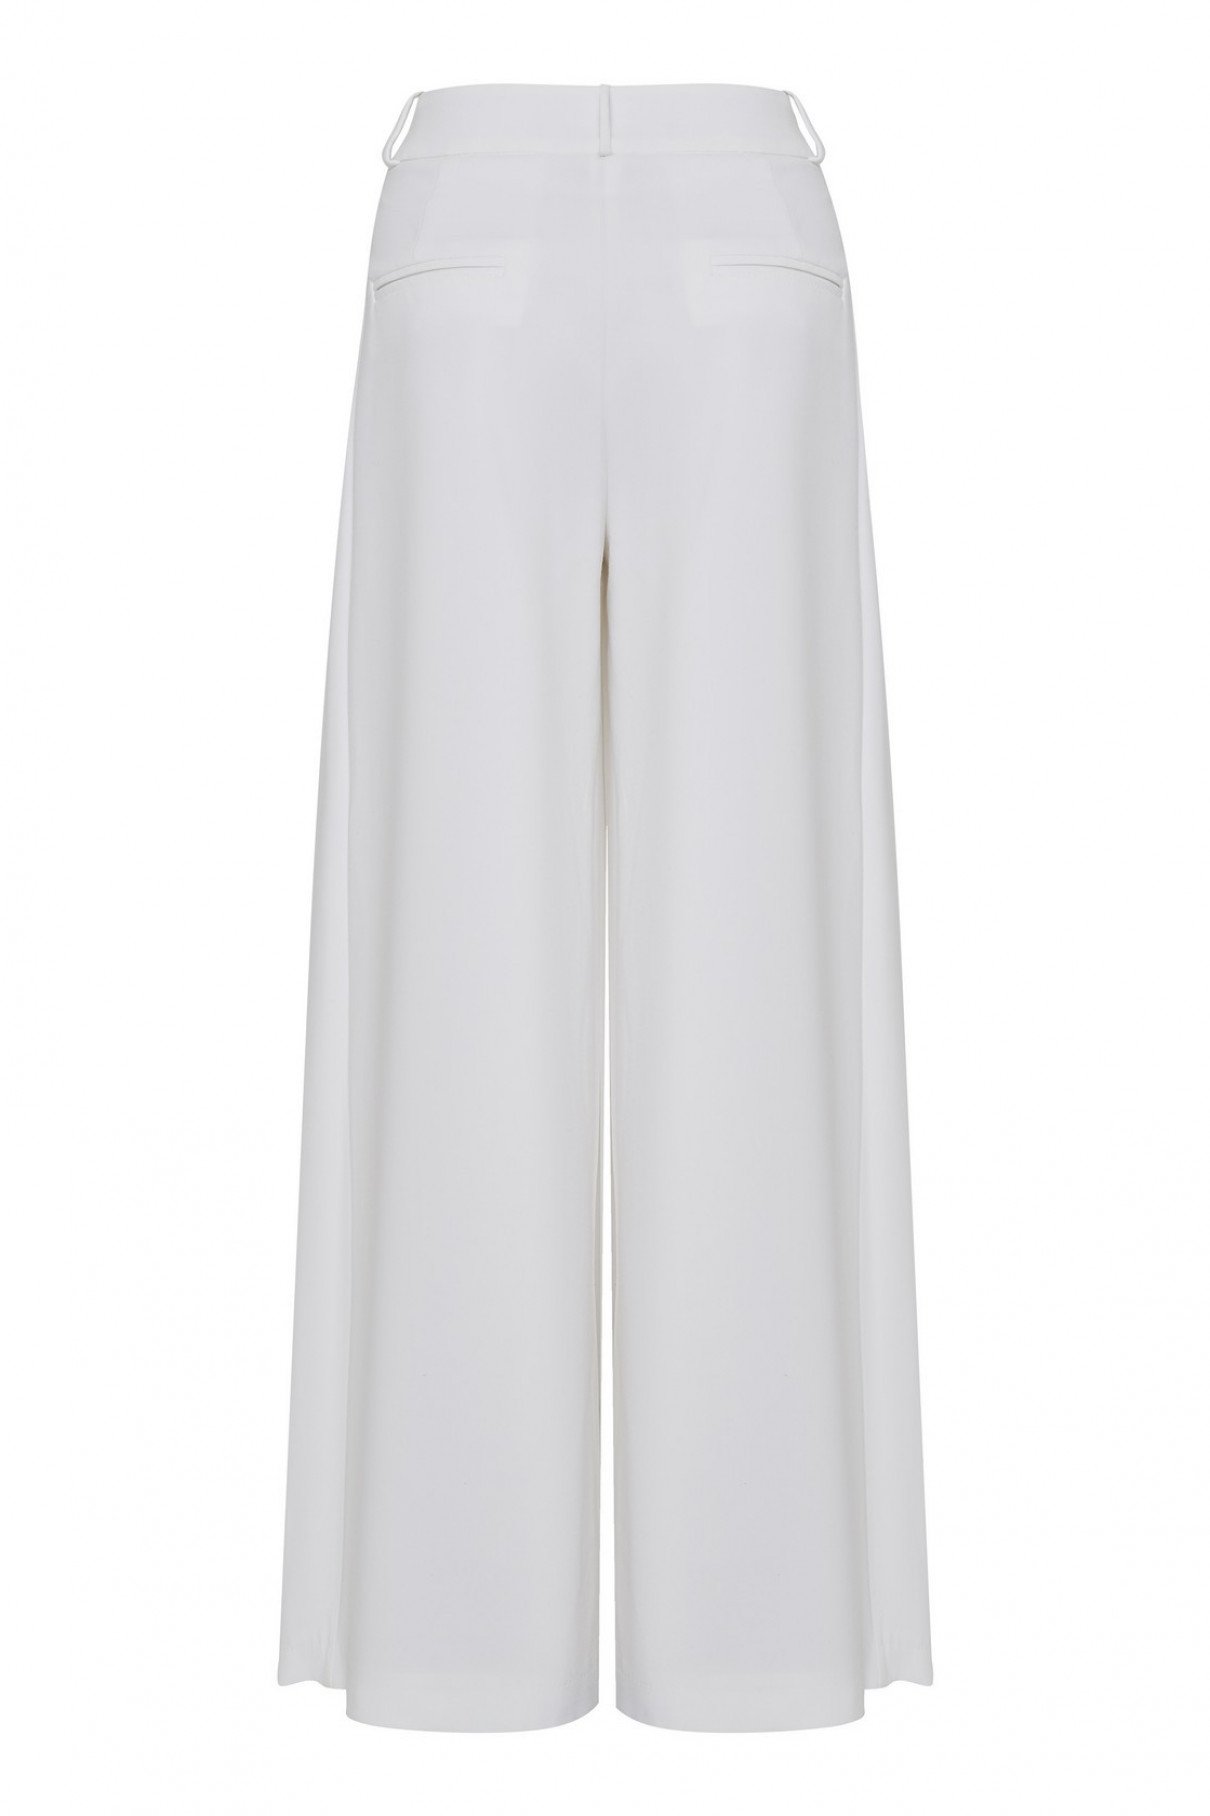 Белые брюки со складками , Белый, арт. FR20-АВ-4-бл-4 купить в интернет-магазине